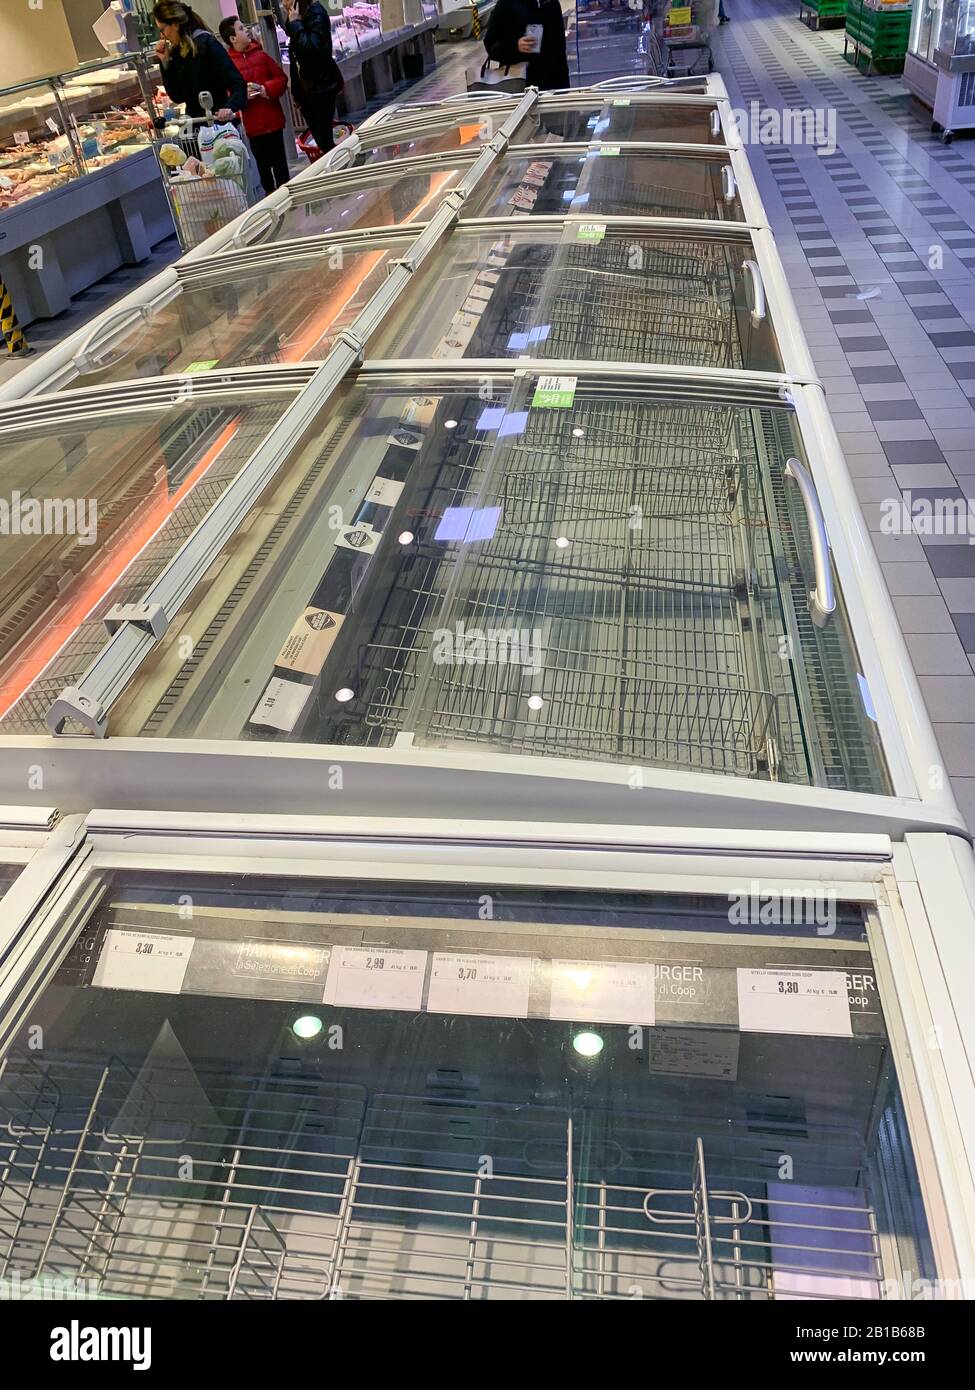 Mantova, Italien - 2020 24. februar: Leere Kühlschränke in einem Supermarkt in der Lombardei während der Coronavirus Epidemie Stockfoto